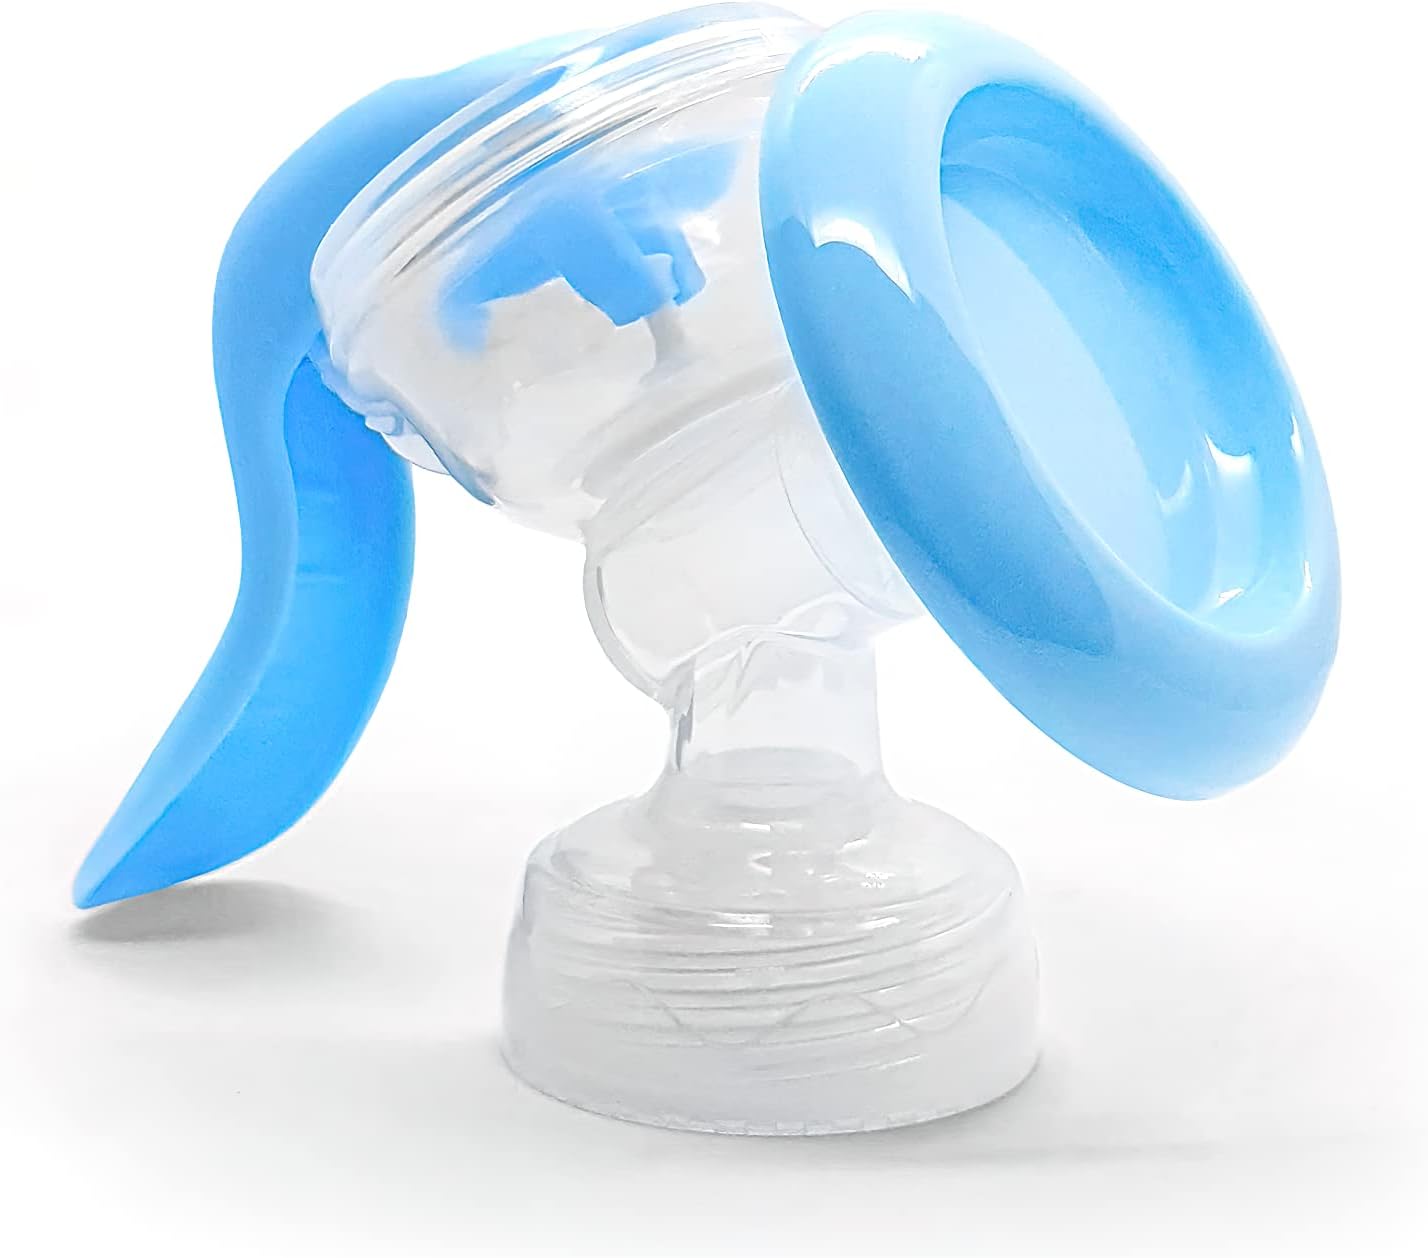 Bubbles manual breast pump - light blue